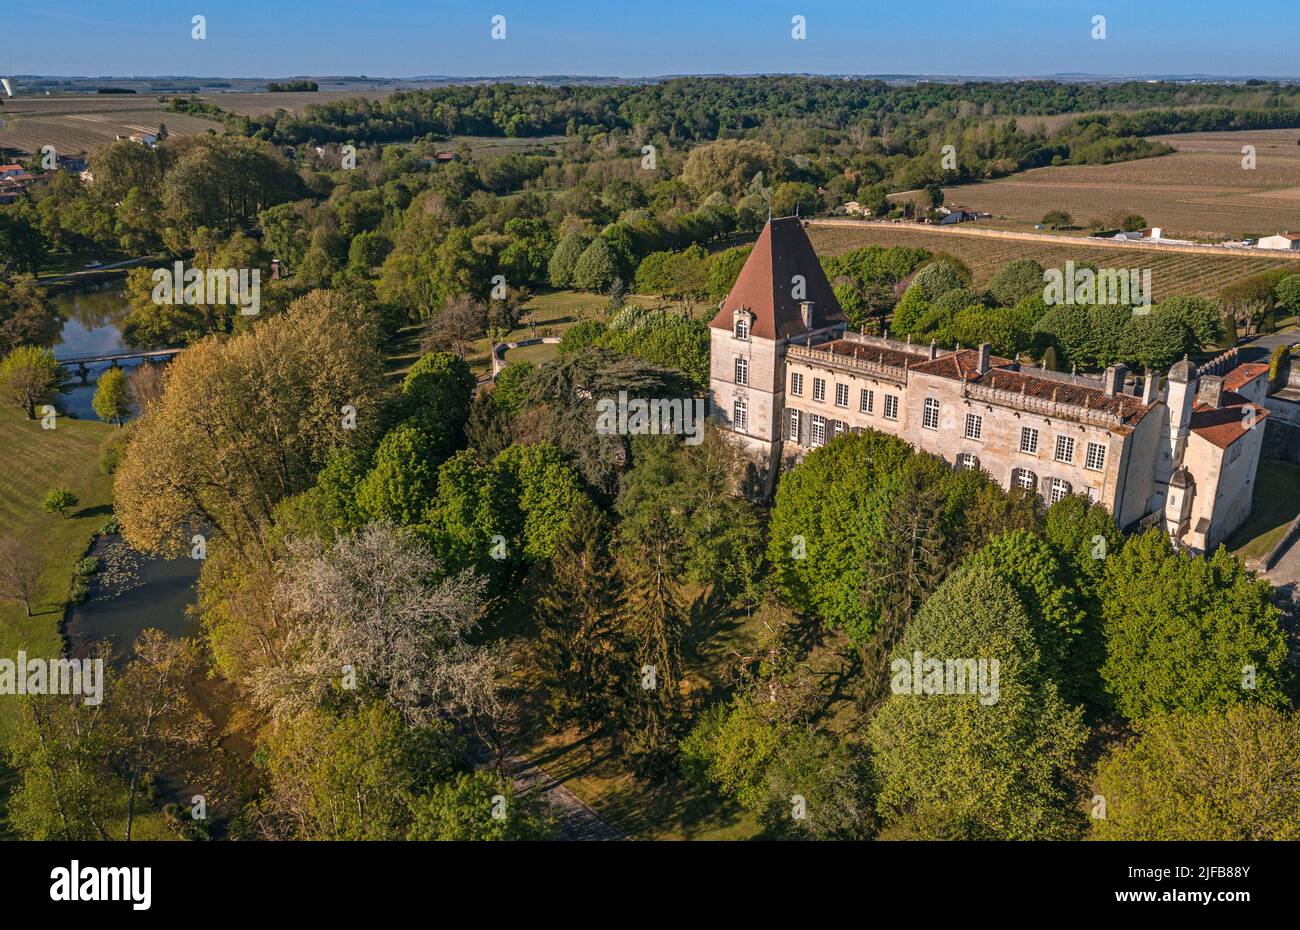 Frankreich, Charente, Bourg Charente, das Chateau de Bourg gehört zur Familie Marnier-Lapostolle, es produziert dort Grand Marnier-Liköre (Luftaufnahme) Stockfoto